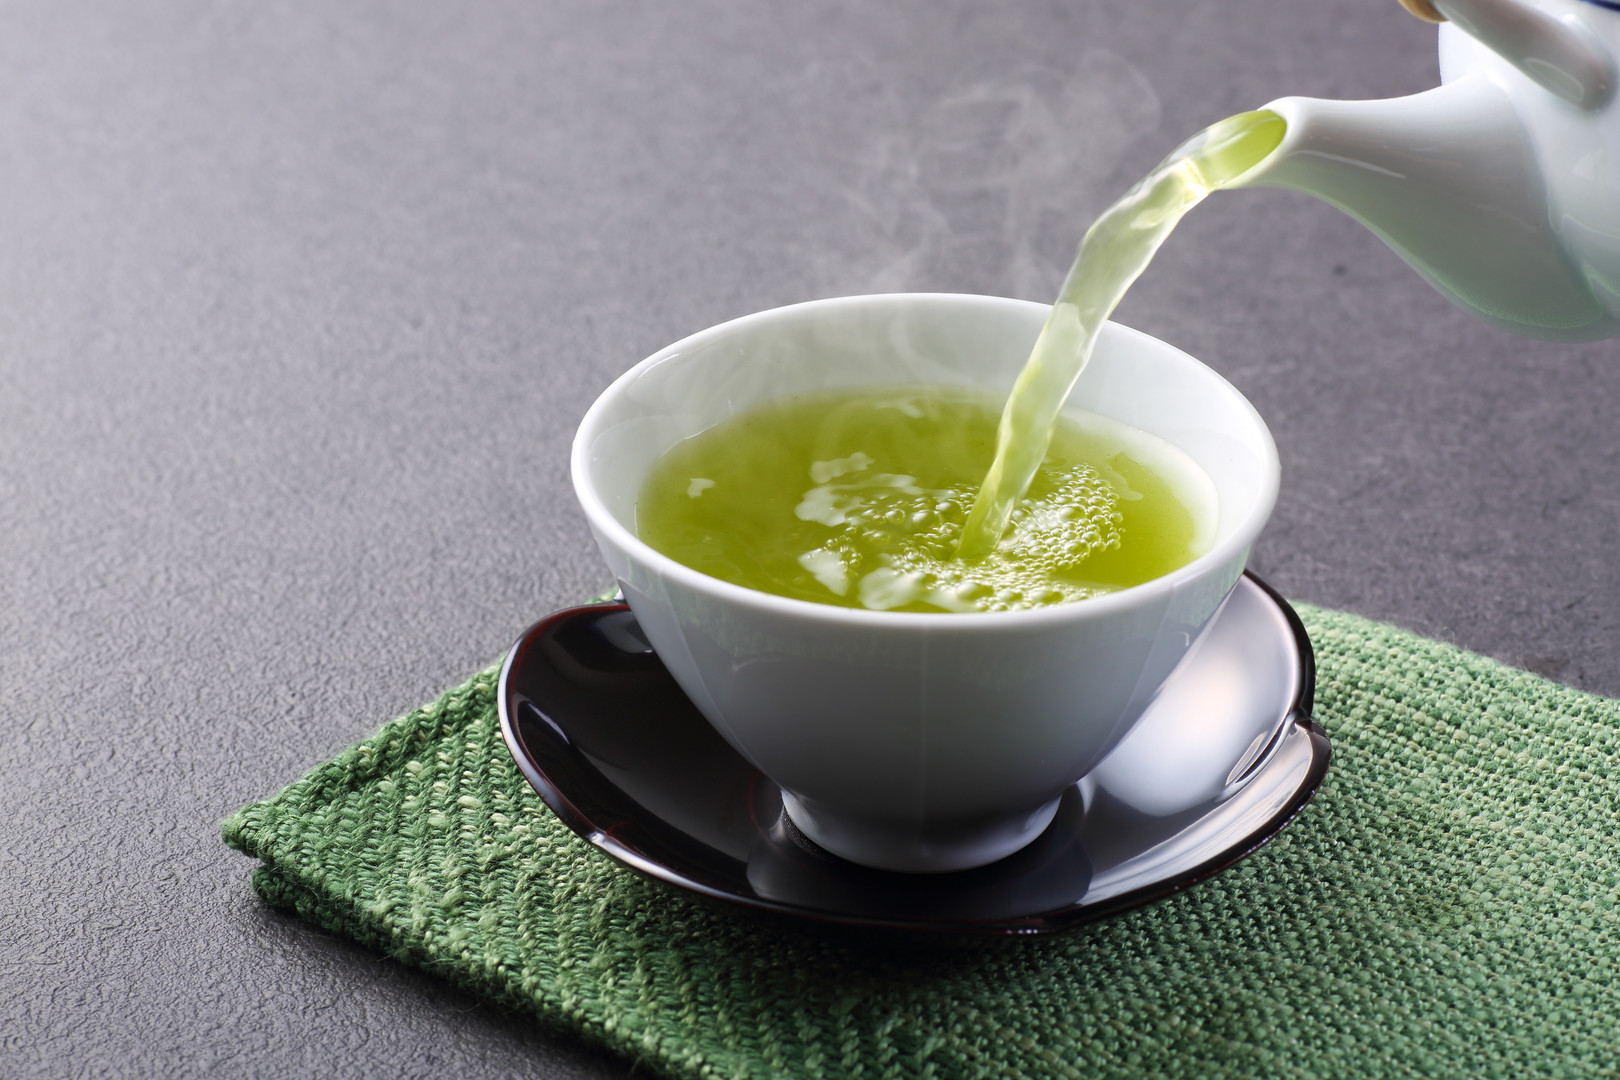 A zöld tea L-teanin-tartalma miatt segíti a szorongásos tünetek enyhítését, mivel ez az antioxidáns megakadályozza az idegeket túlzott izgatottságát. 